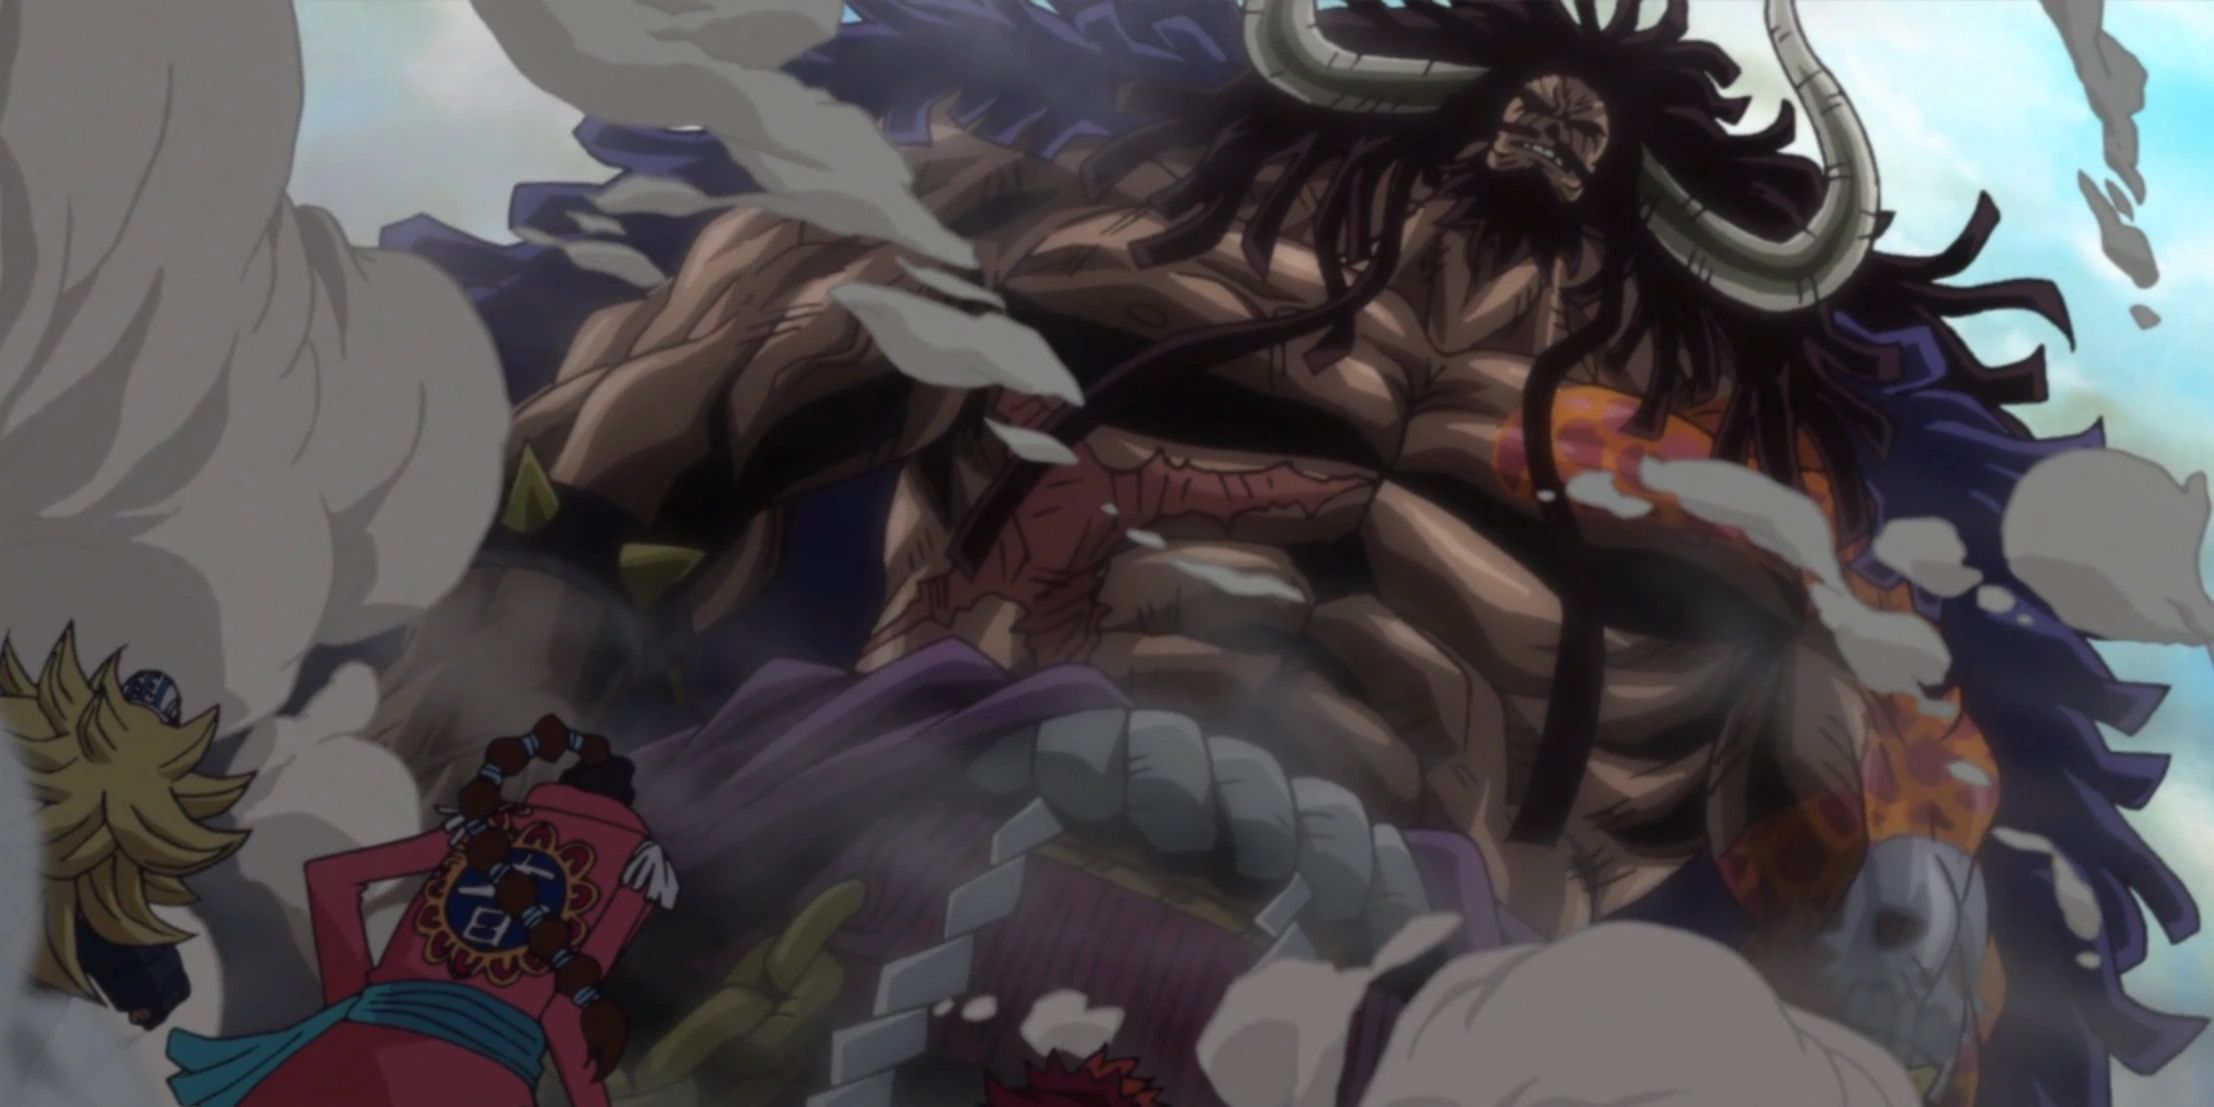 Kaido met littekens op zijn torso in One Piece.